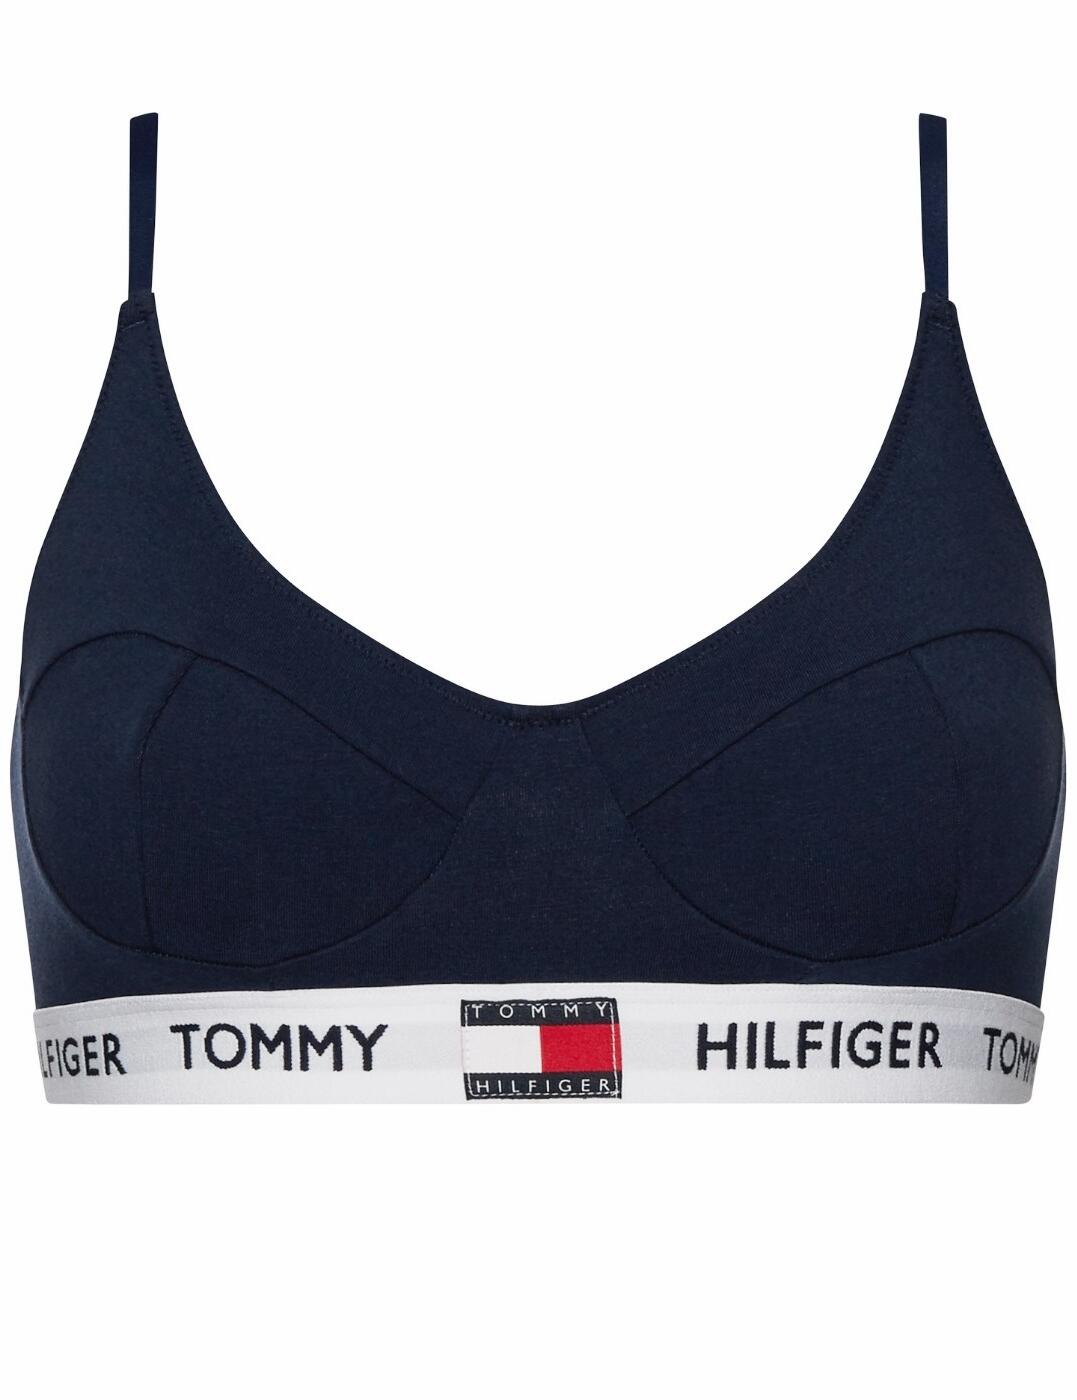 Tommy Hilfiger T-Shirt Bralette - Belle Lingerie  Tommy Hilfiger T-Shirt  Bralette - Belle Lingerie